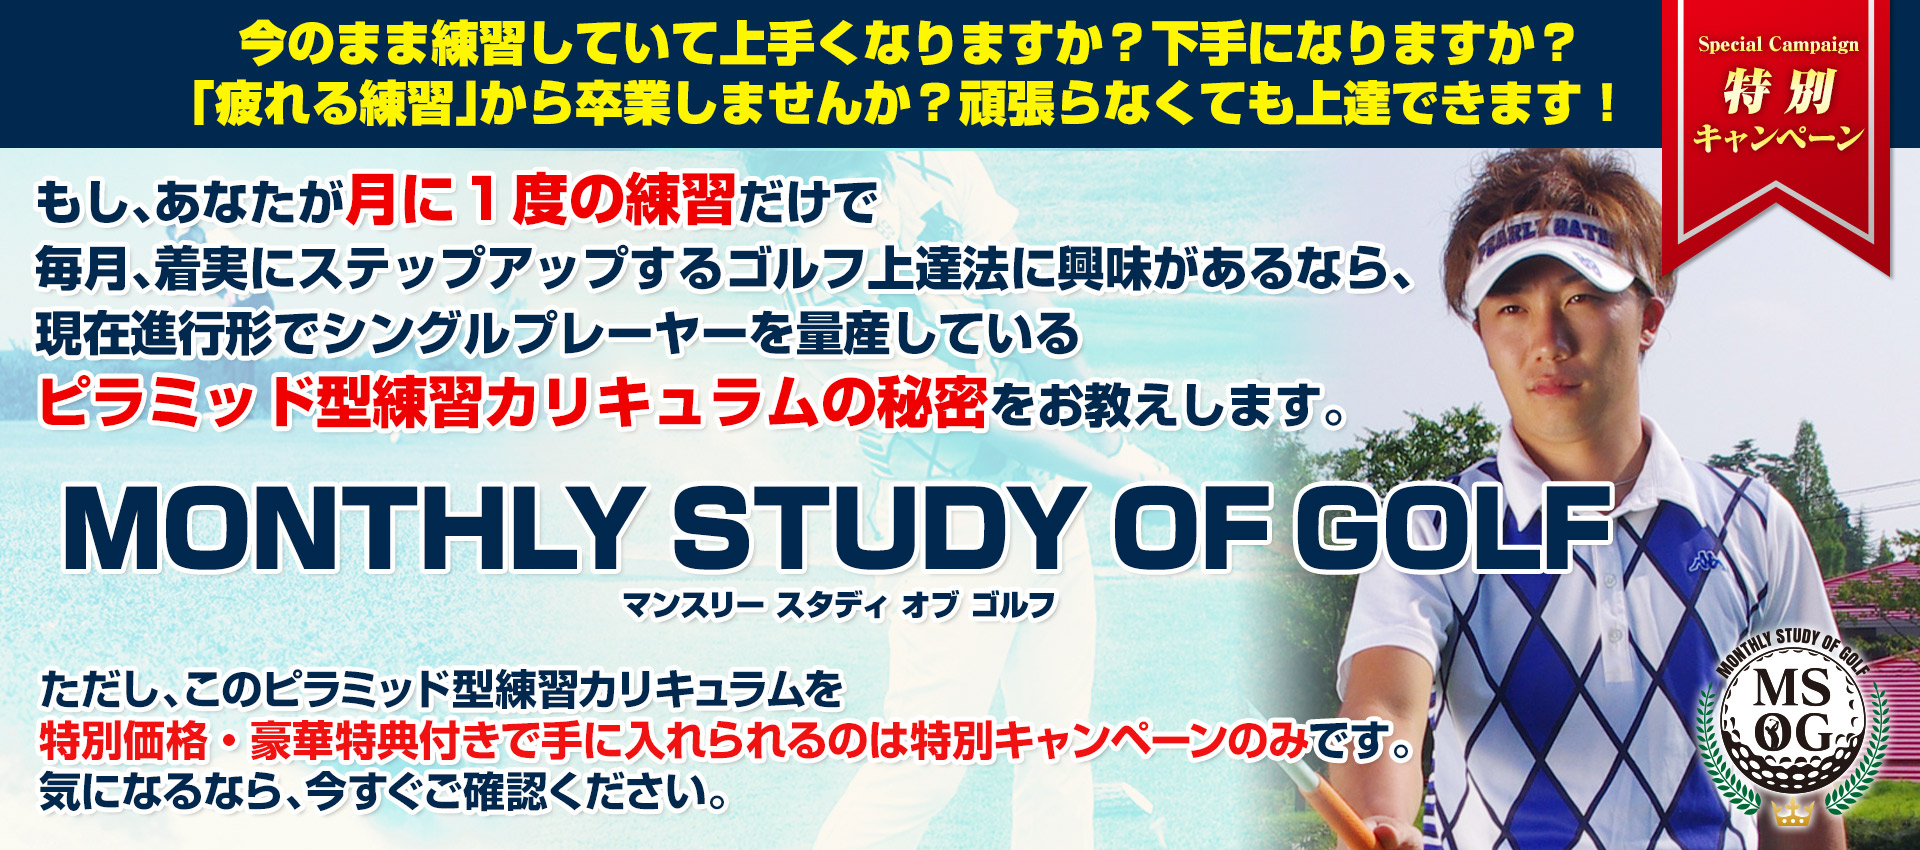 MONTHLY STUDY OF GOLF（マンスリー スタディ オブ ゴルフ）